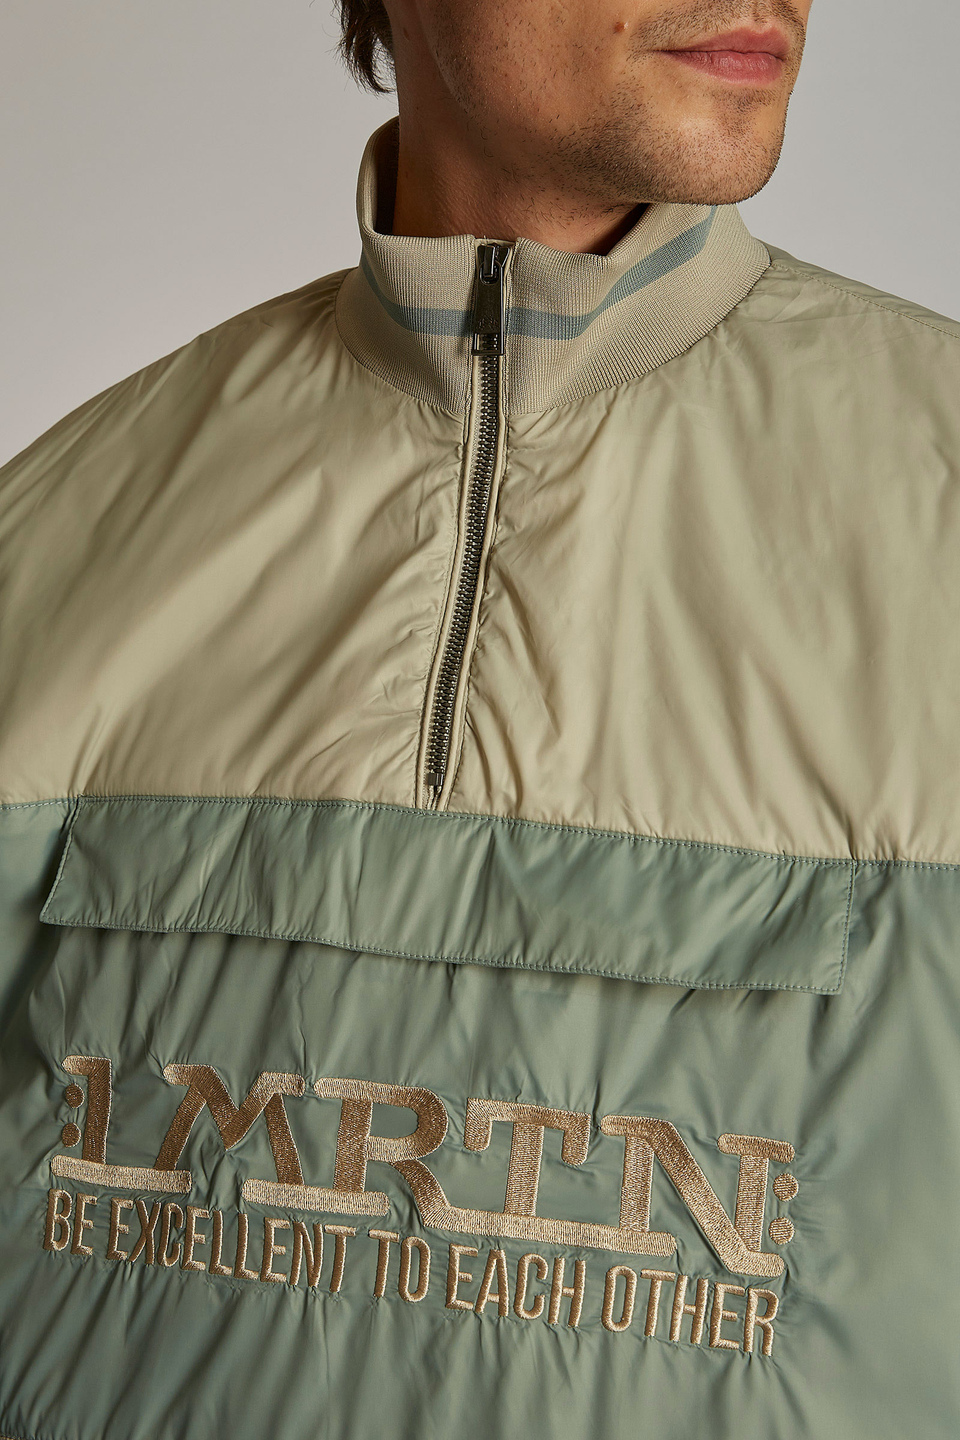 Sudadera de hombre de tejido técnico, modelo oversize, con banda en la parte delantera - La Martina - Official Online Shop